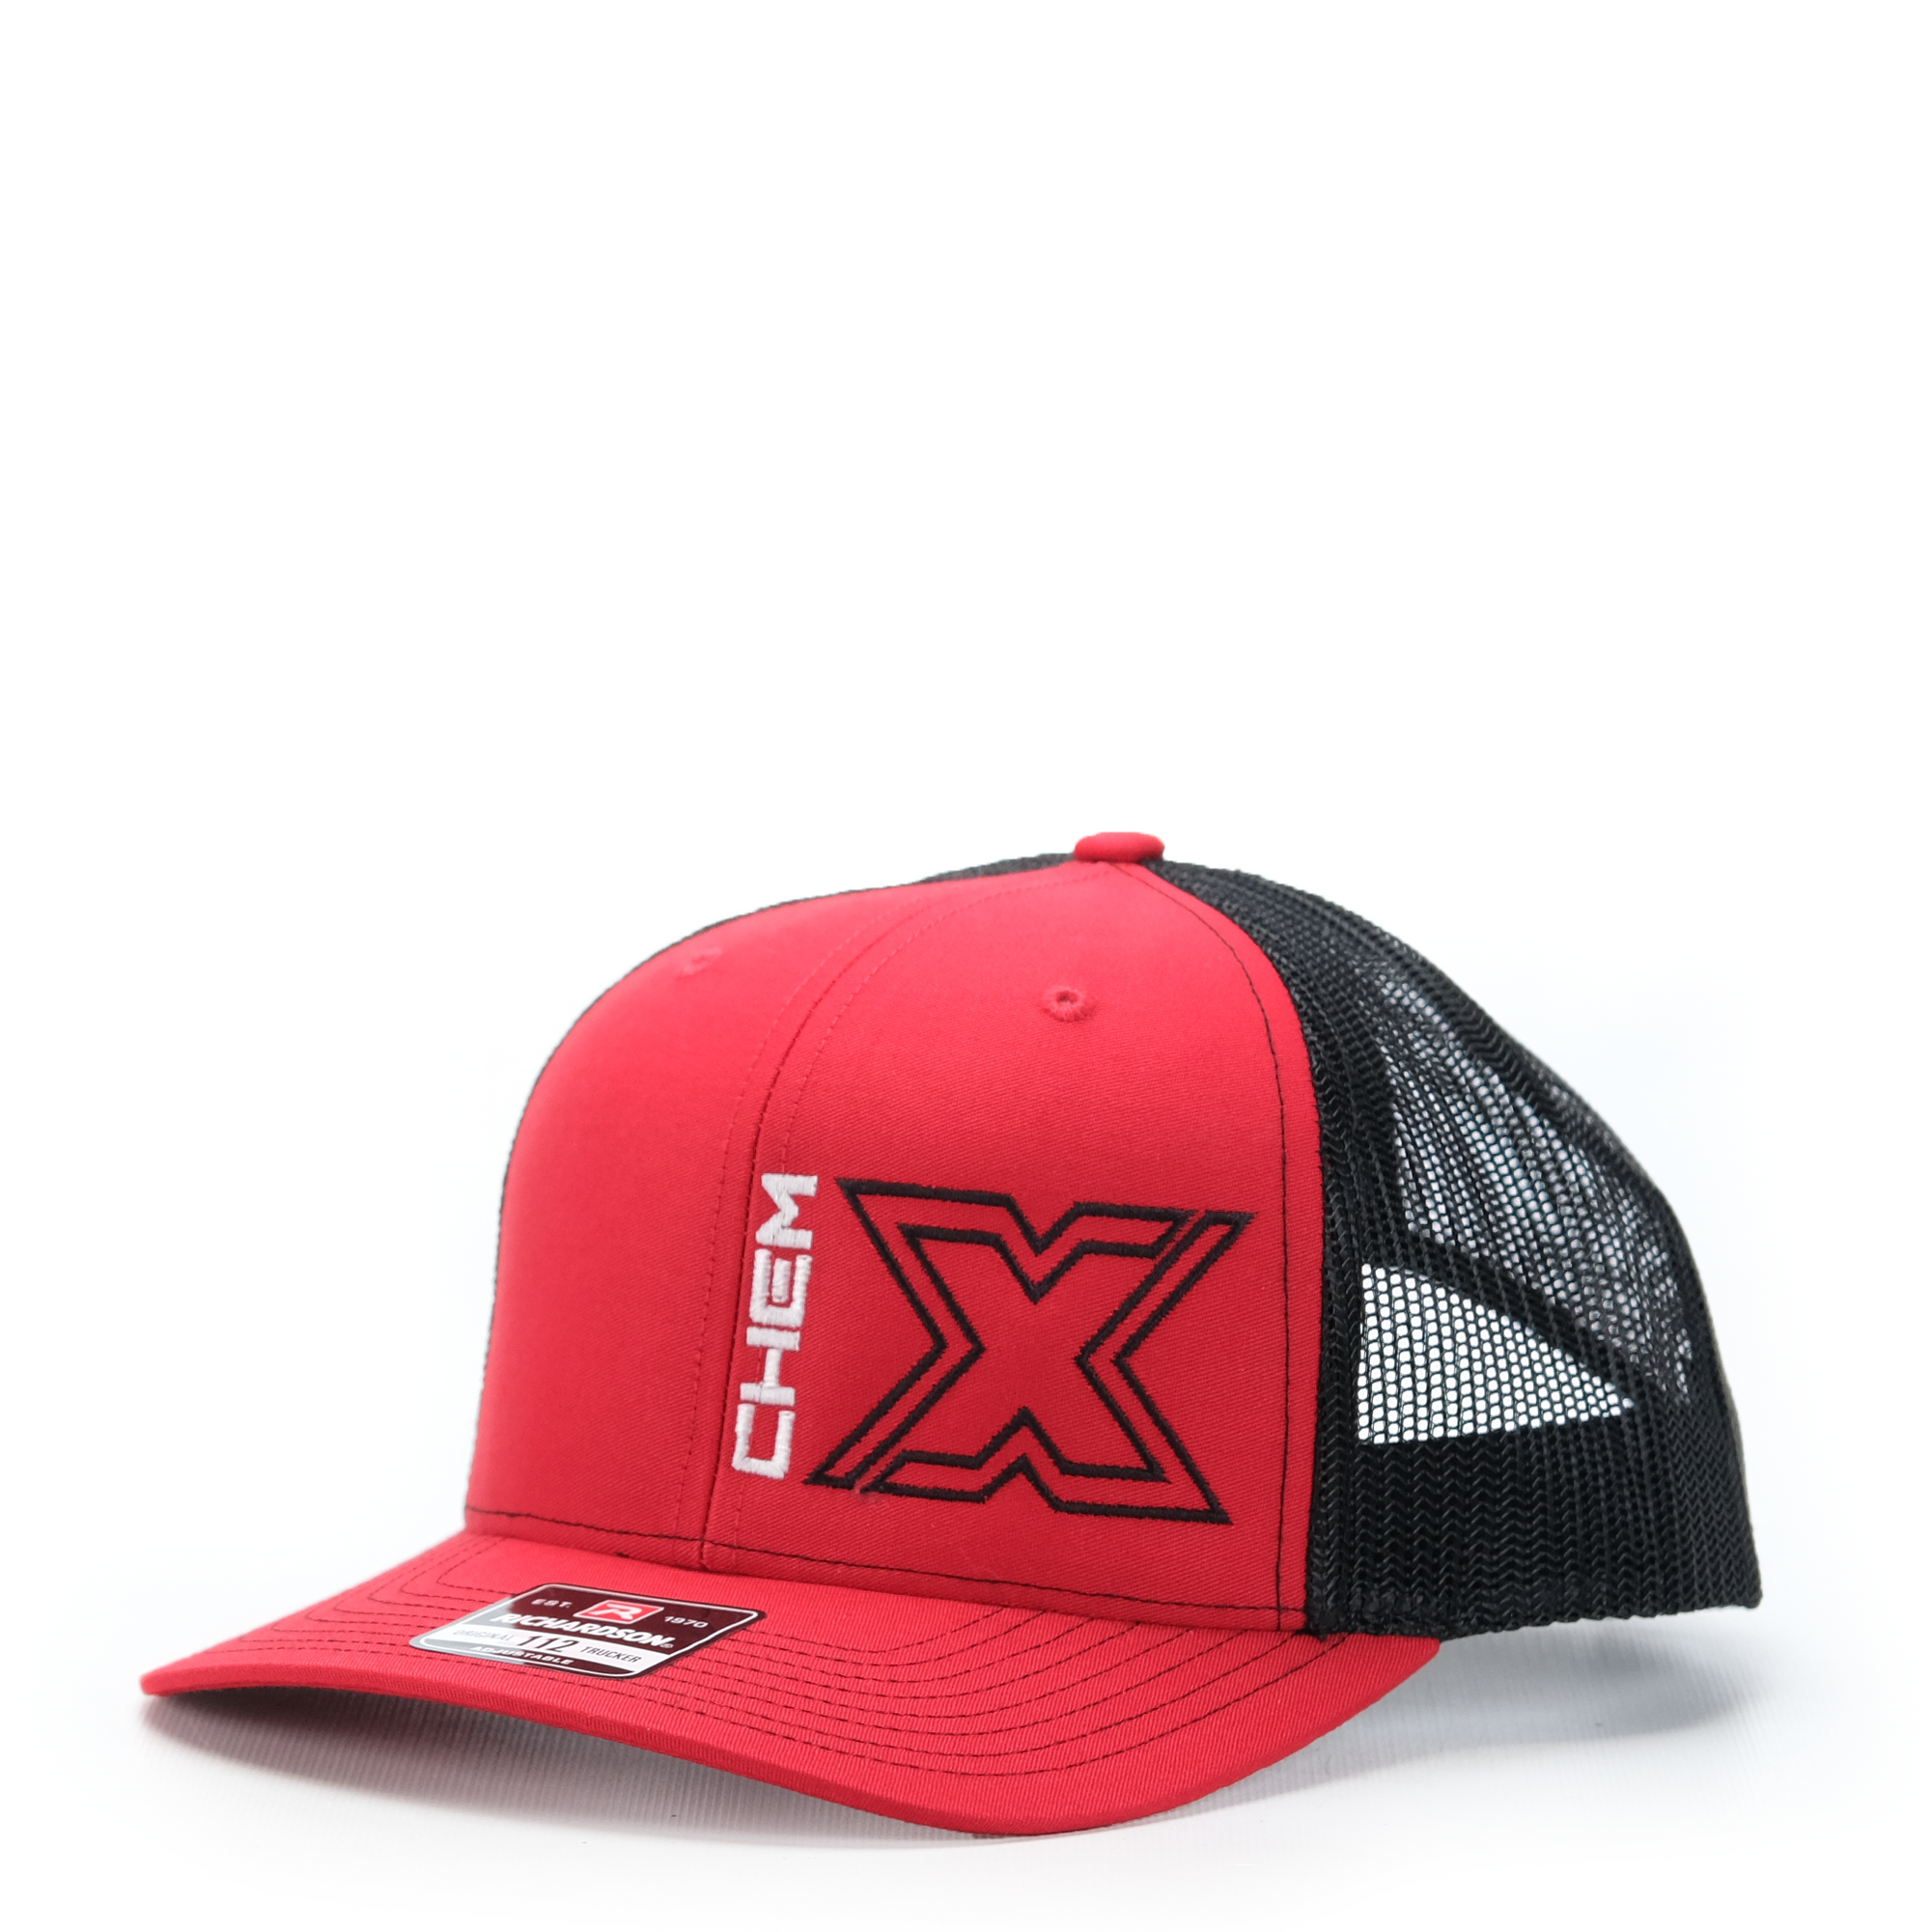 Chem-X Trucker Hat: Richardson 112 Red / Black